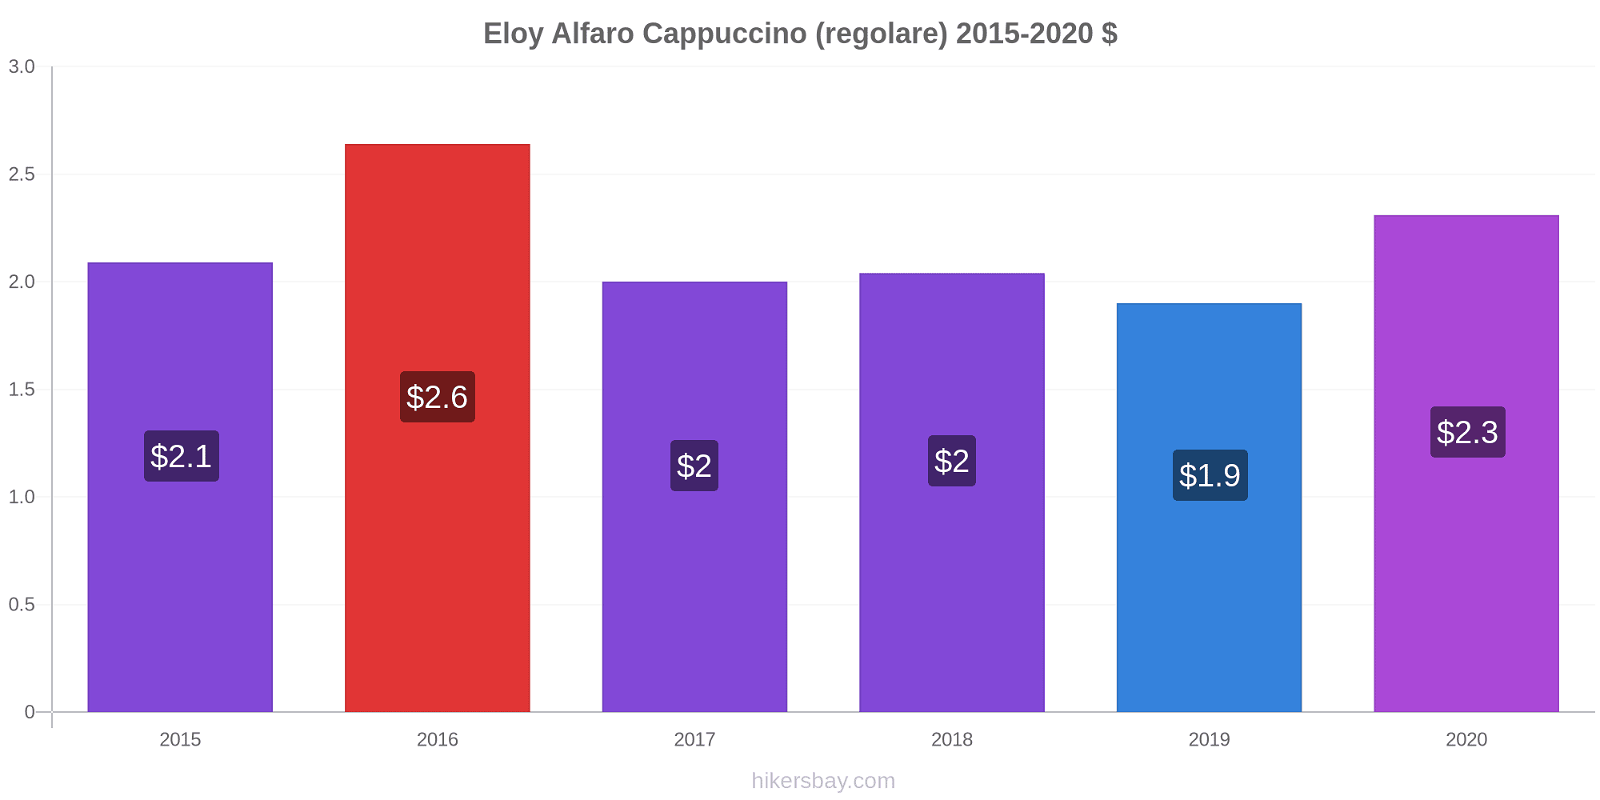 Eloy Alfaro variazioni di prezzo Cappuccino (normale) hikersbay.com